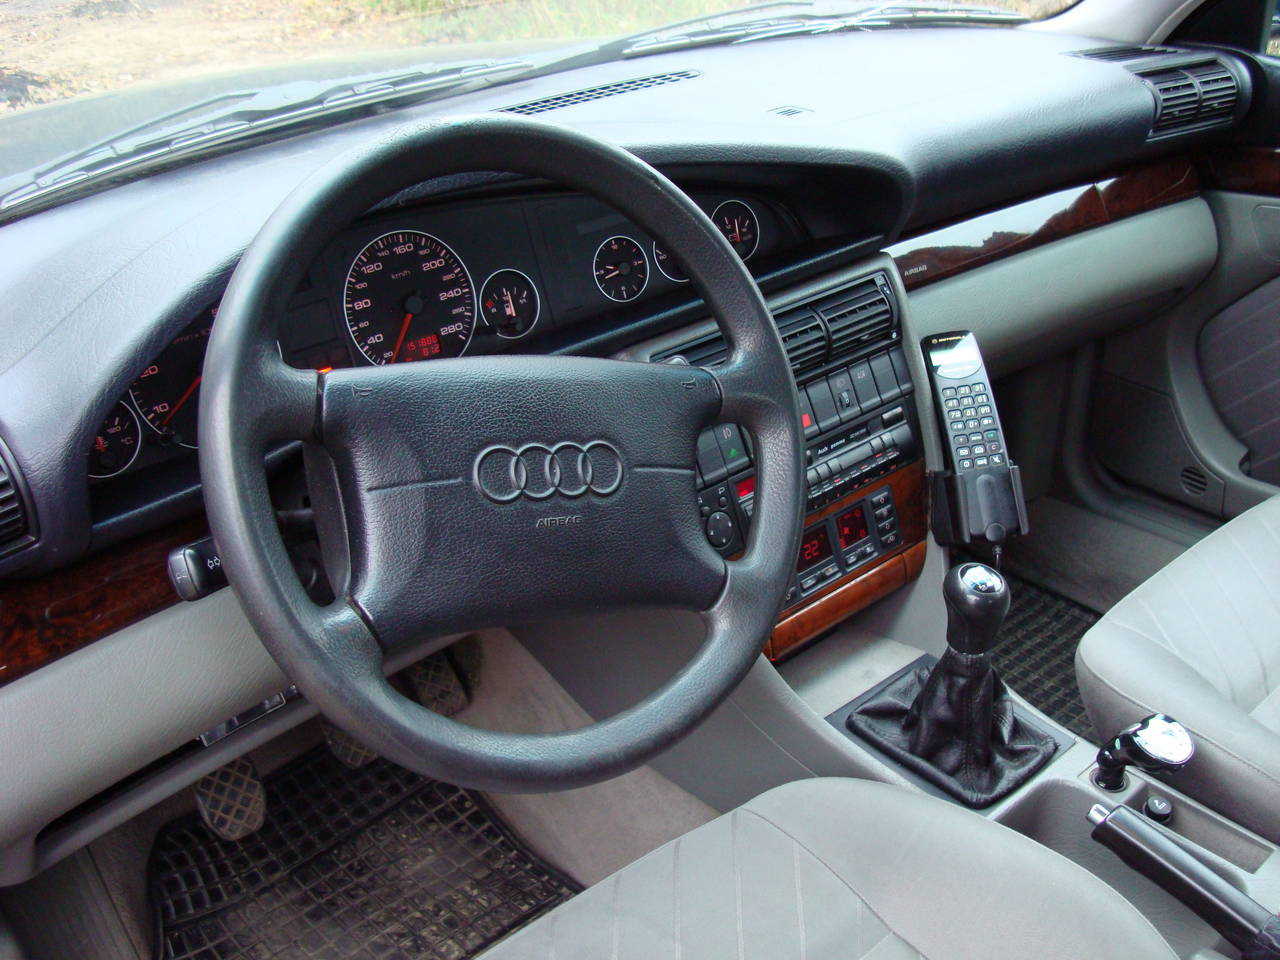 06 06 1990. Audi a6 c4 1994 Interior. Audi 100 c4 45 кузов. Ауди 100 45 кузов 2.8 салон. Ауди а6 с4 1994 салон.